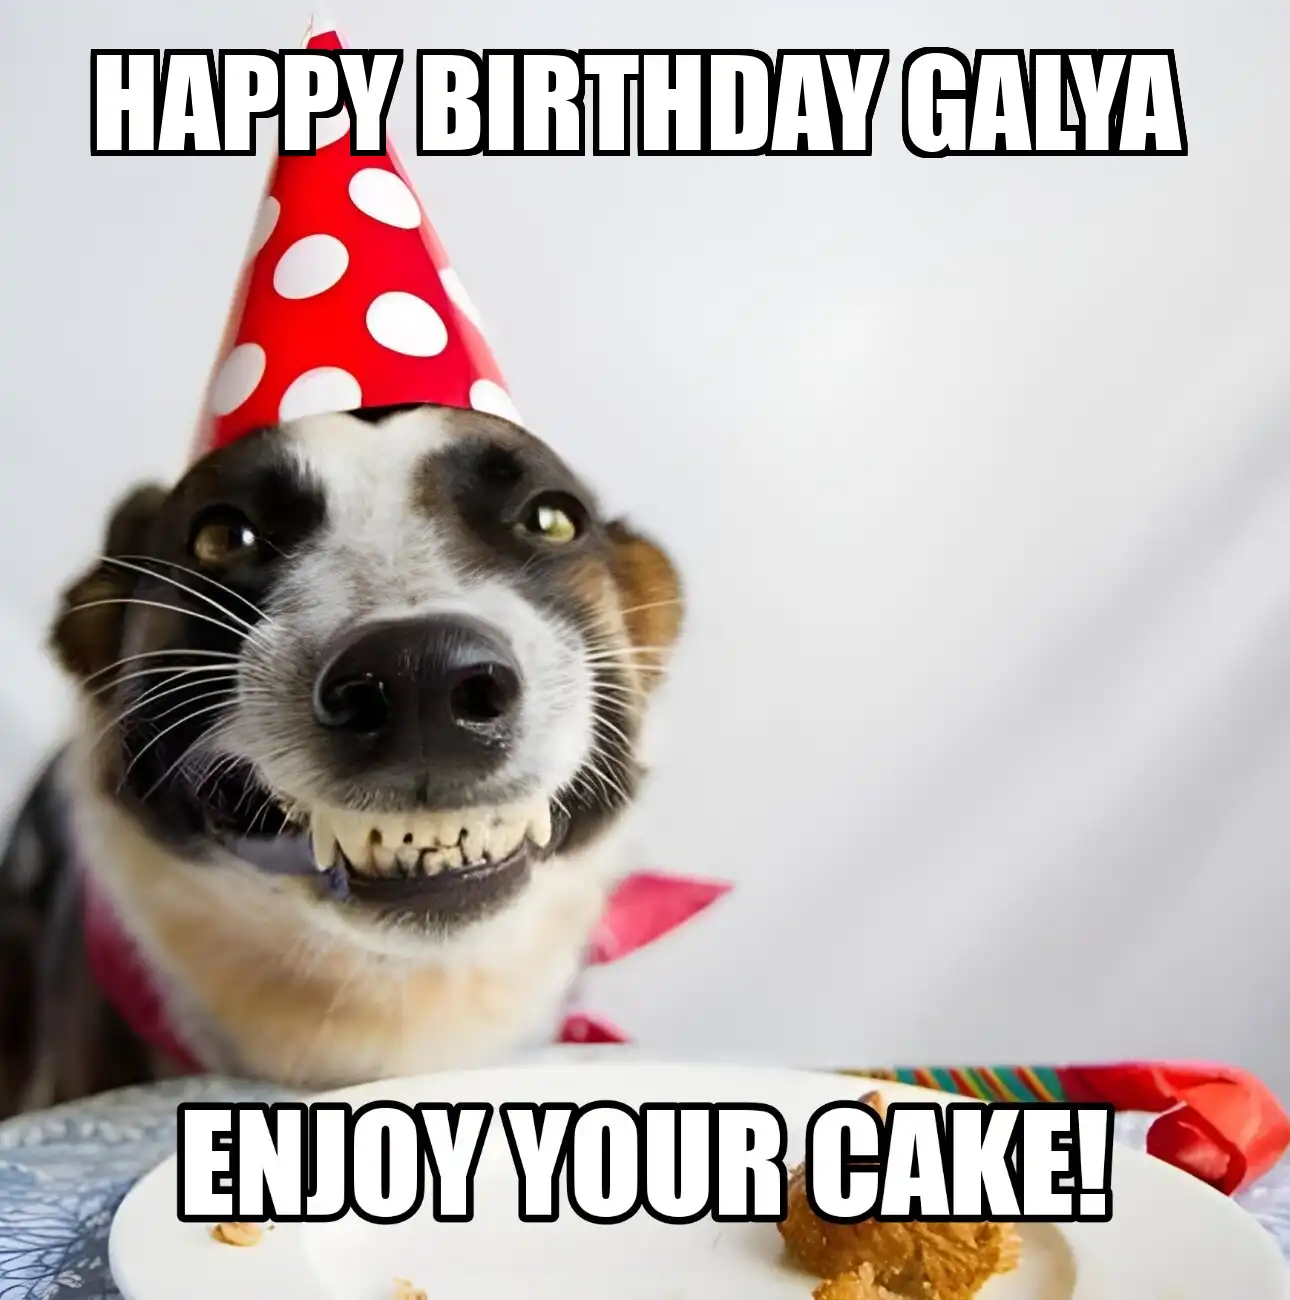 Happy Birthday Galya Enjoy Your Cake Dog Meme